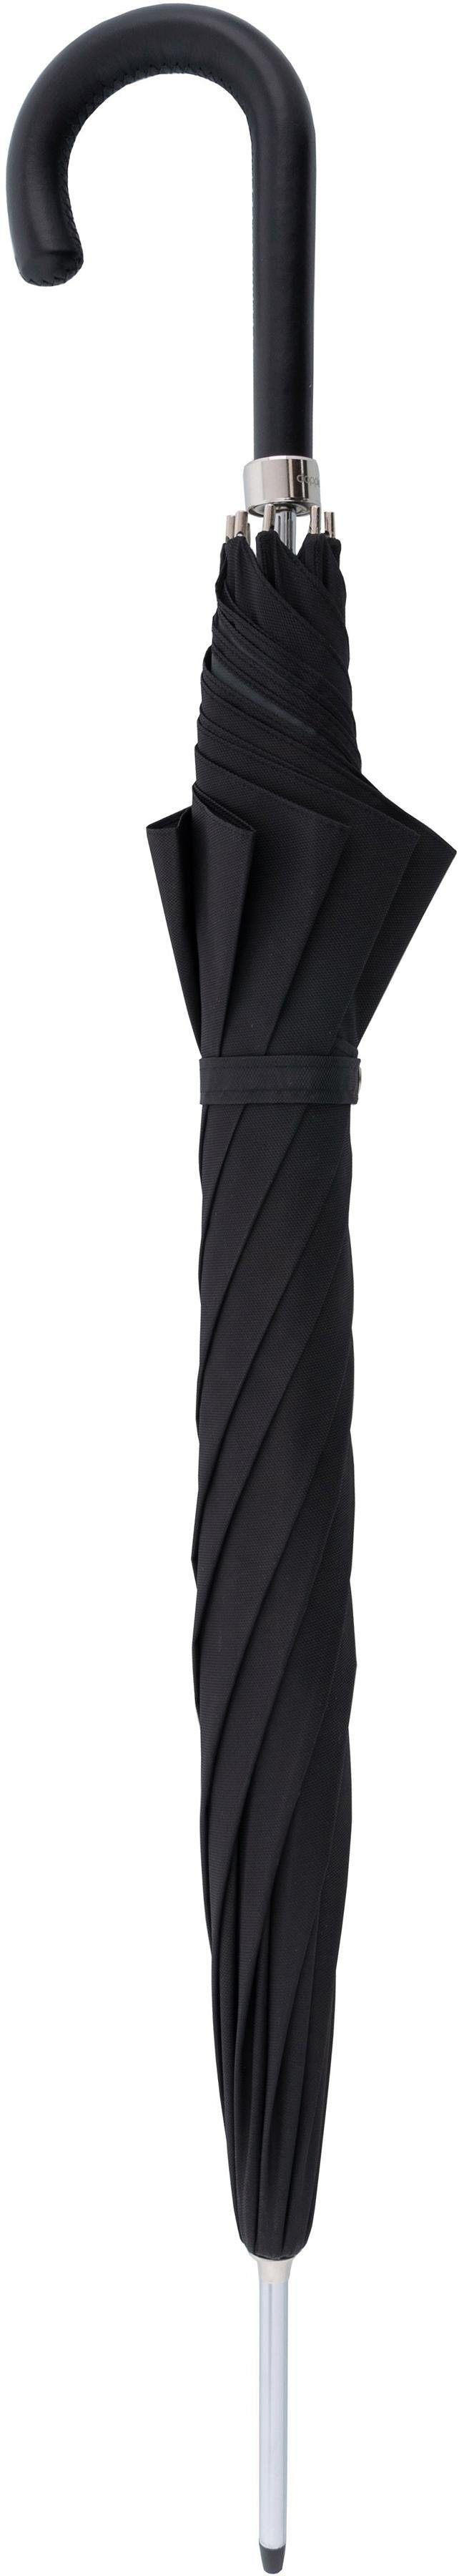 MANUFAKTUR Uni, Manufaktur-Stockschirm Stockregenschirm doppler schwarz, handgemachter Oxford